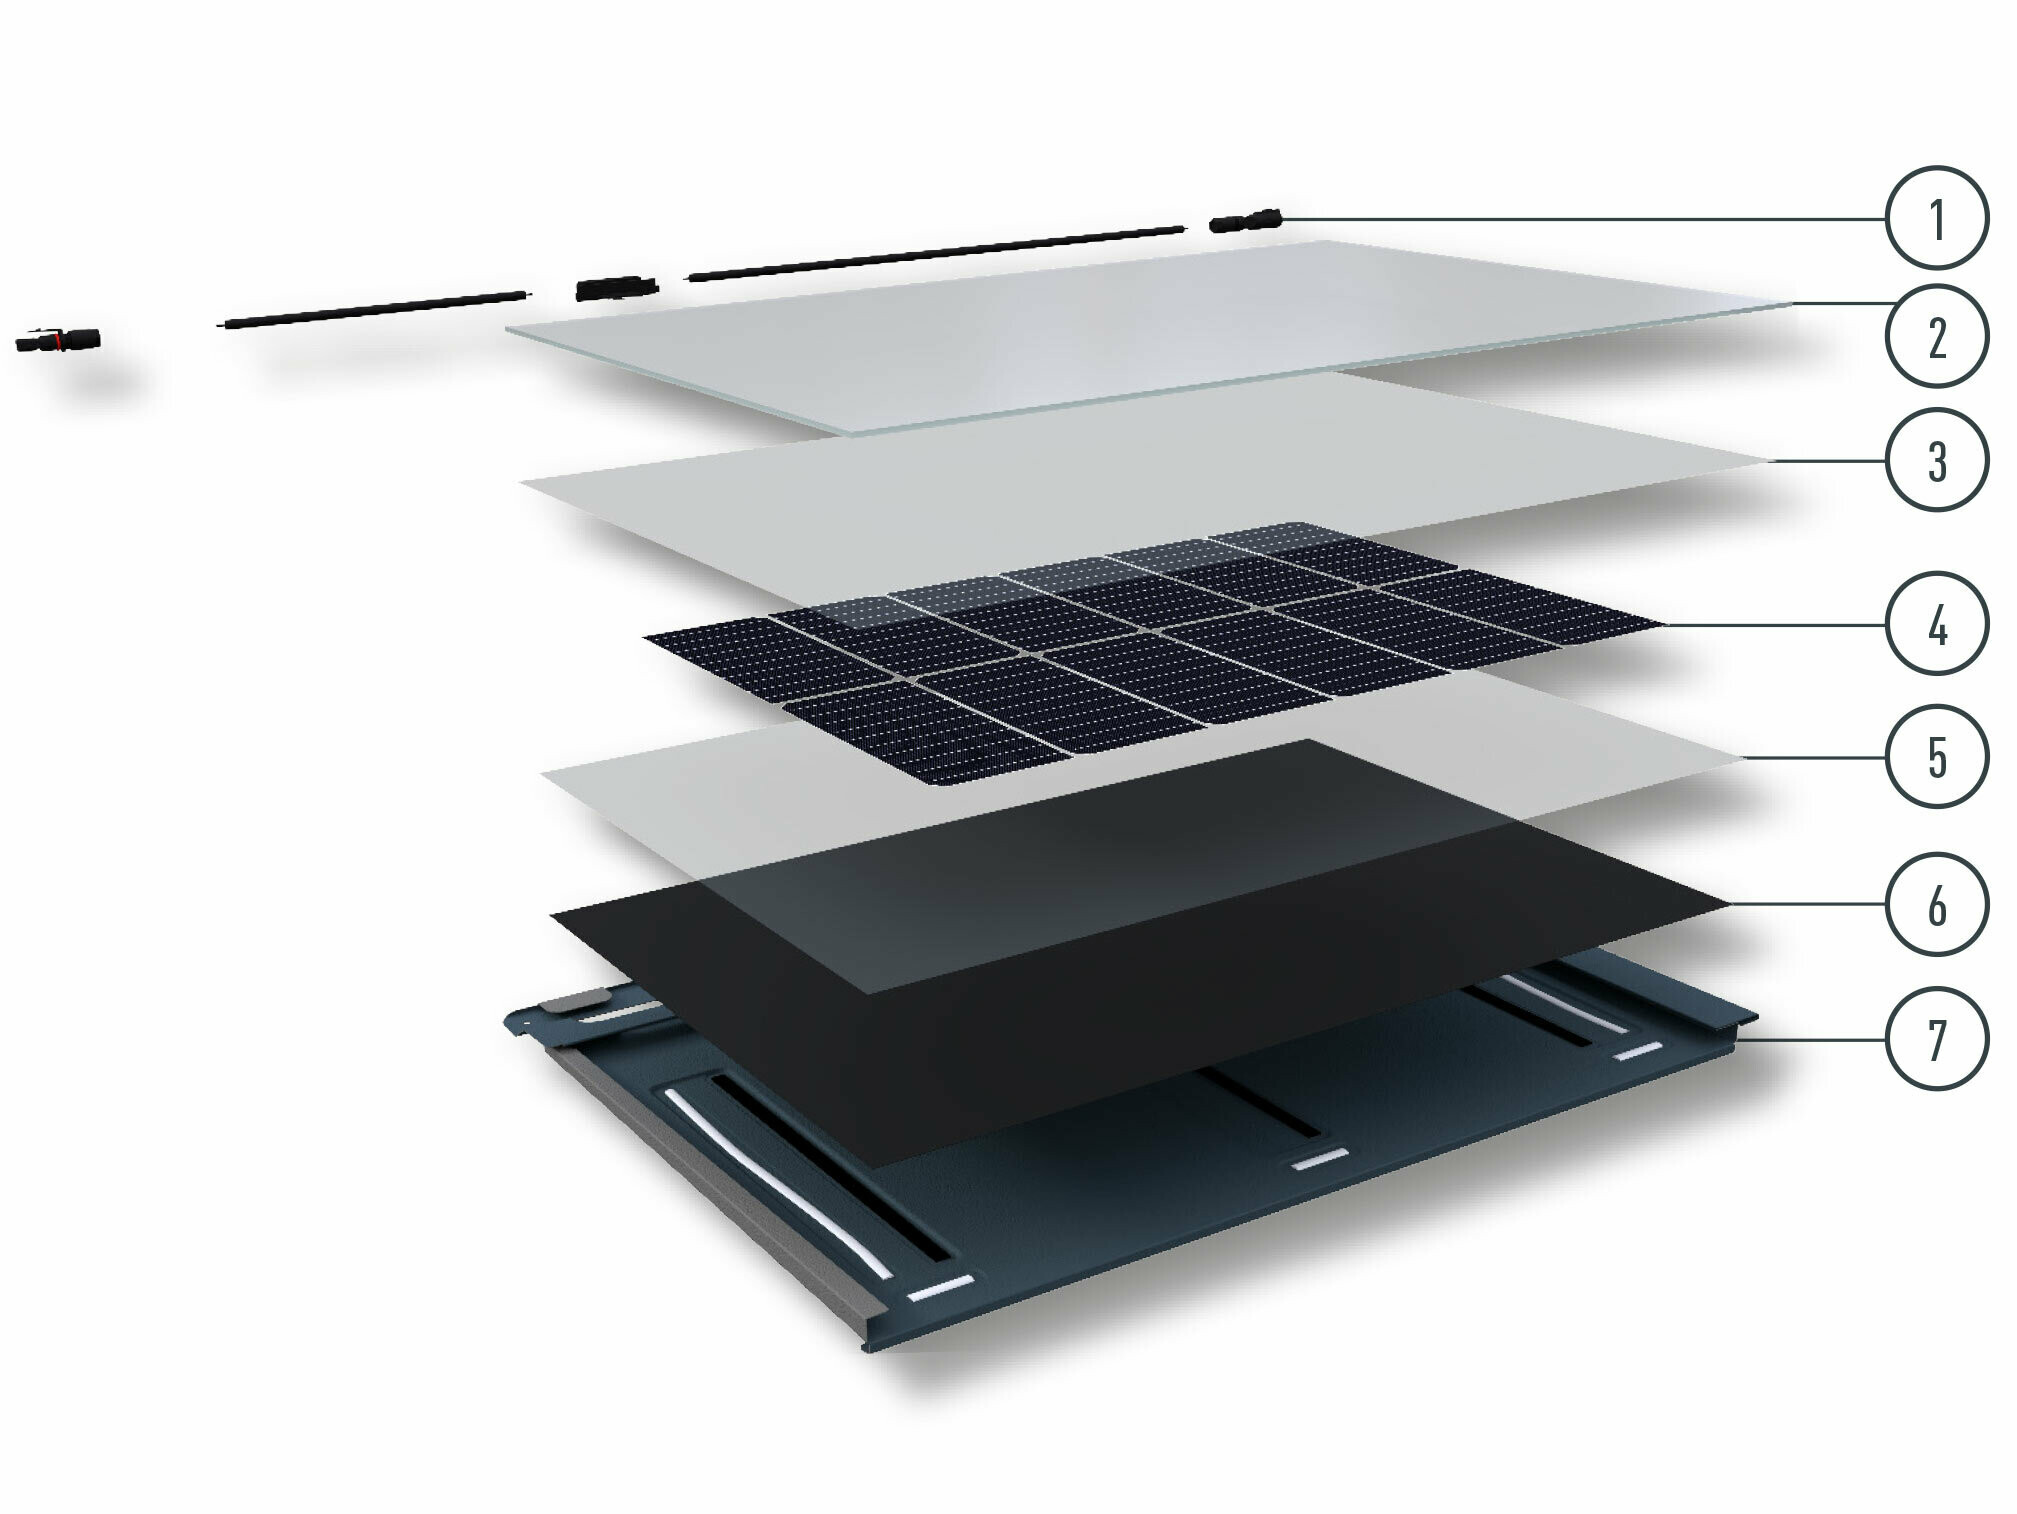 Struttura a strati della tegola fotovoltaica PREFA con connettore fotovoltaico, vetro solare prismato, materiale di incapsulamento, cella fotovoltaica, materiale di incapsulamento, pellicola retro e pannello di alluminio.